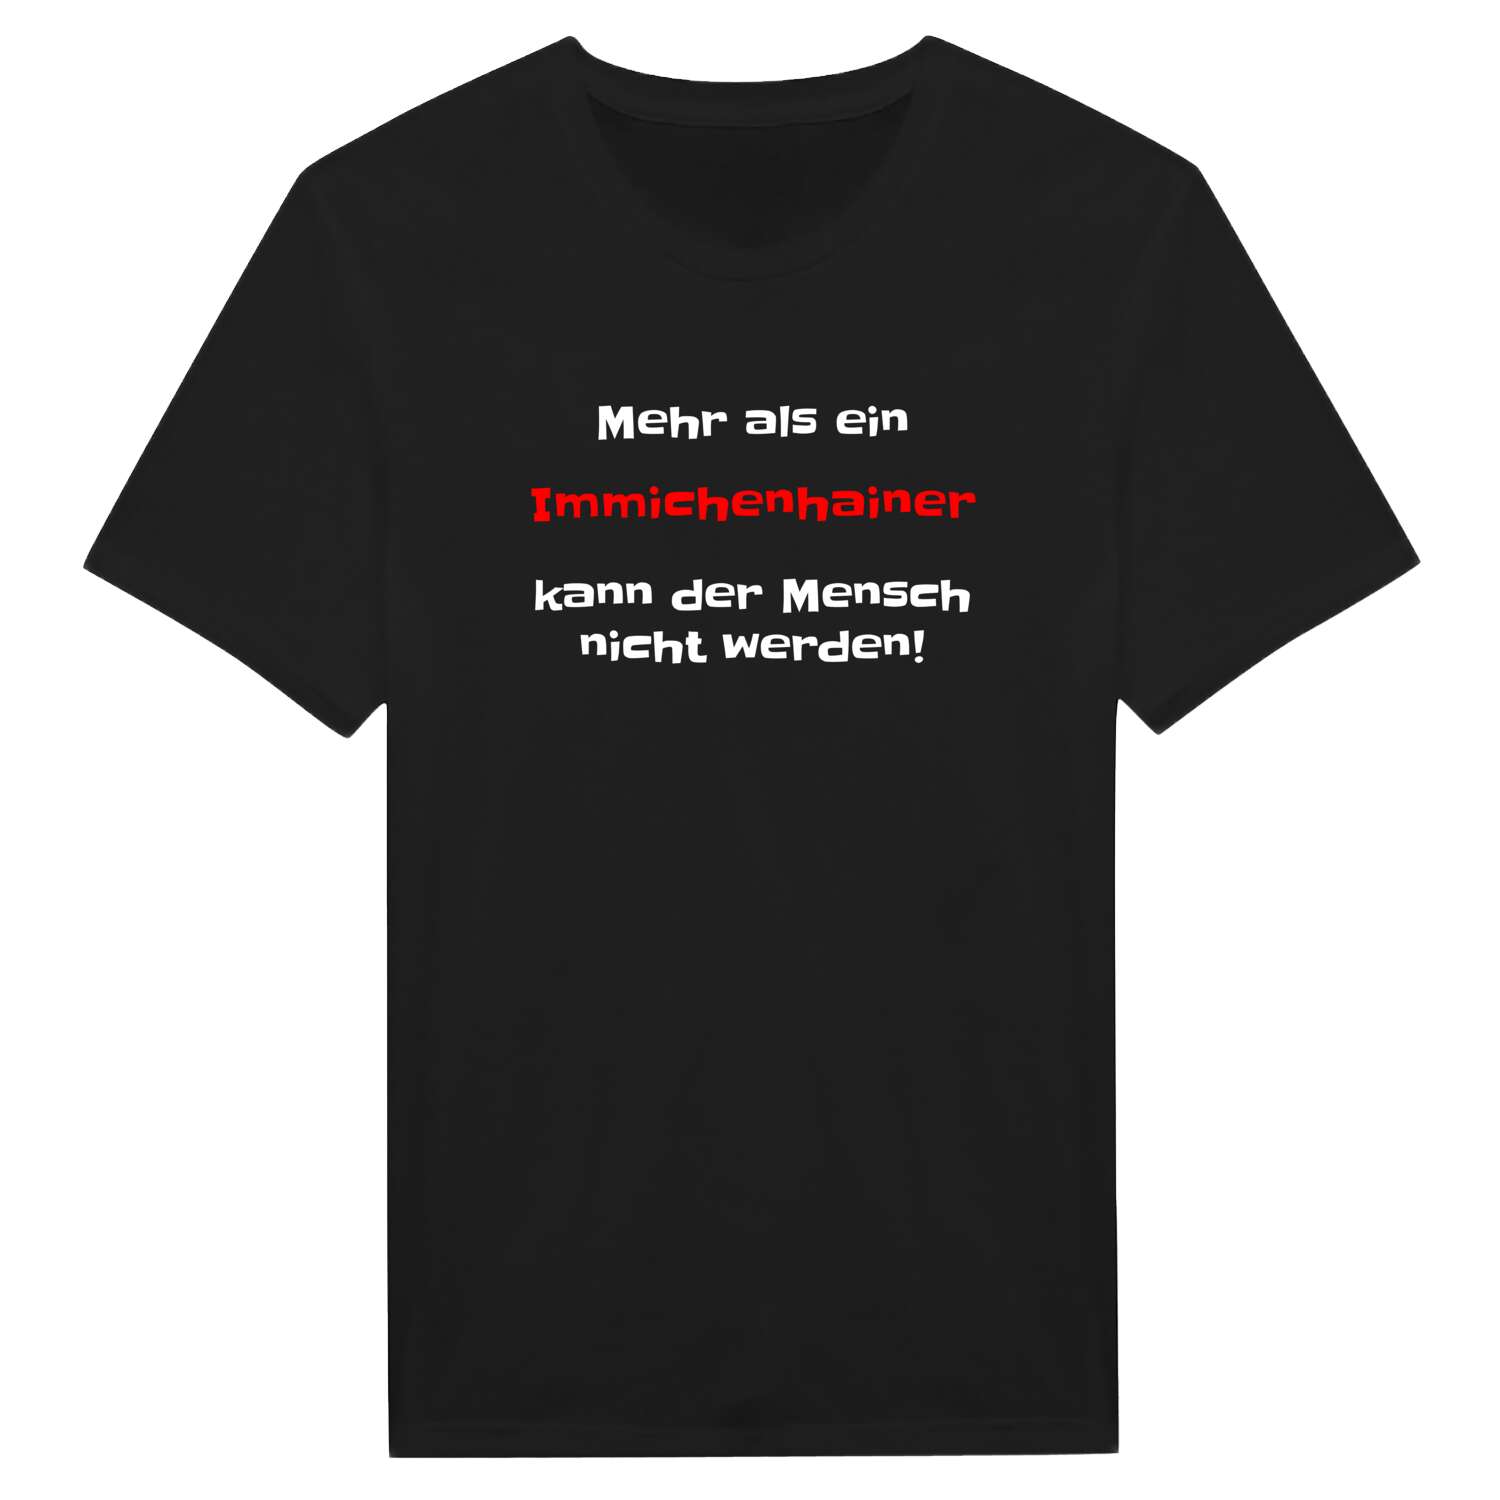 Immichenhain T-Shirt »Mehr als ein«